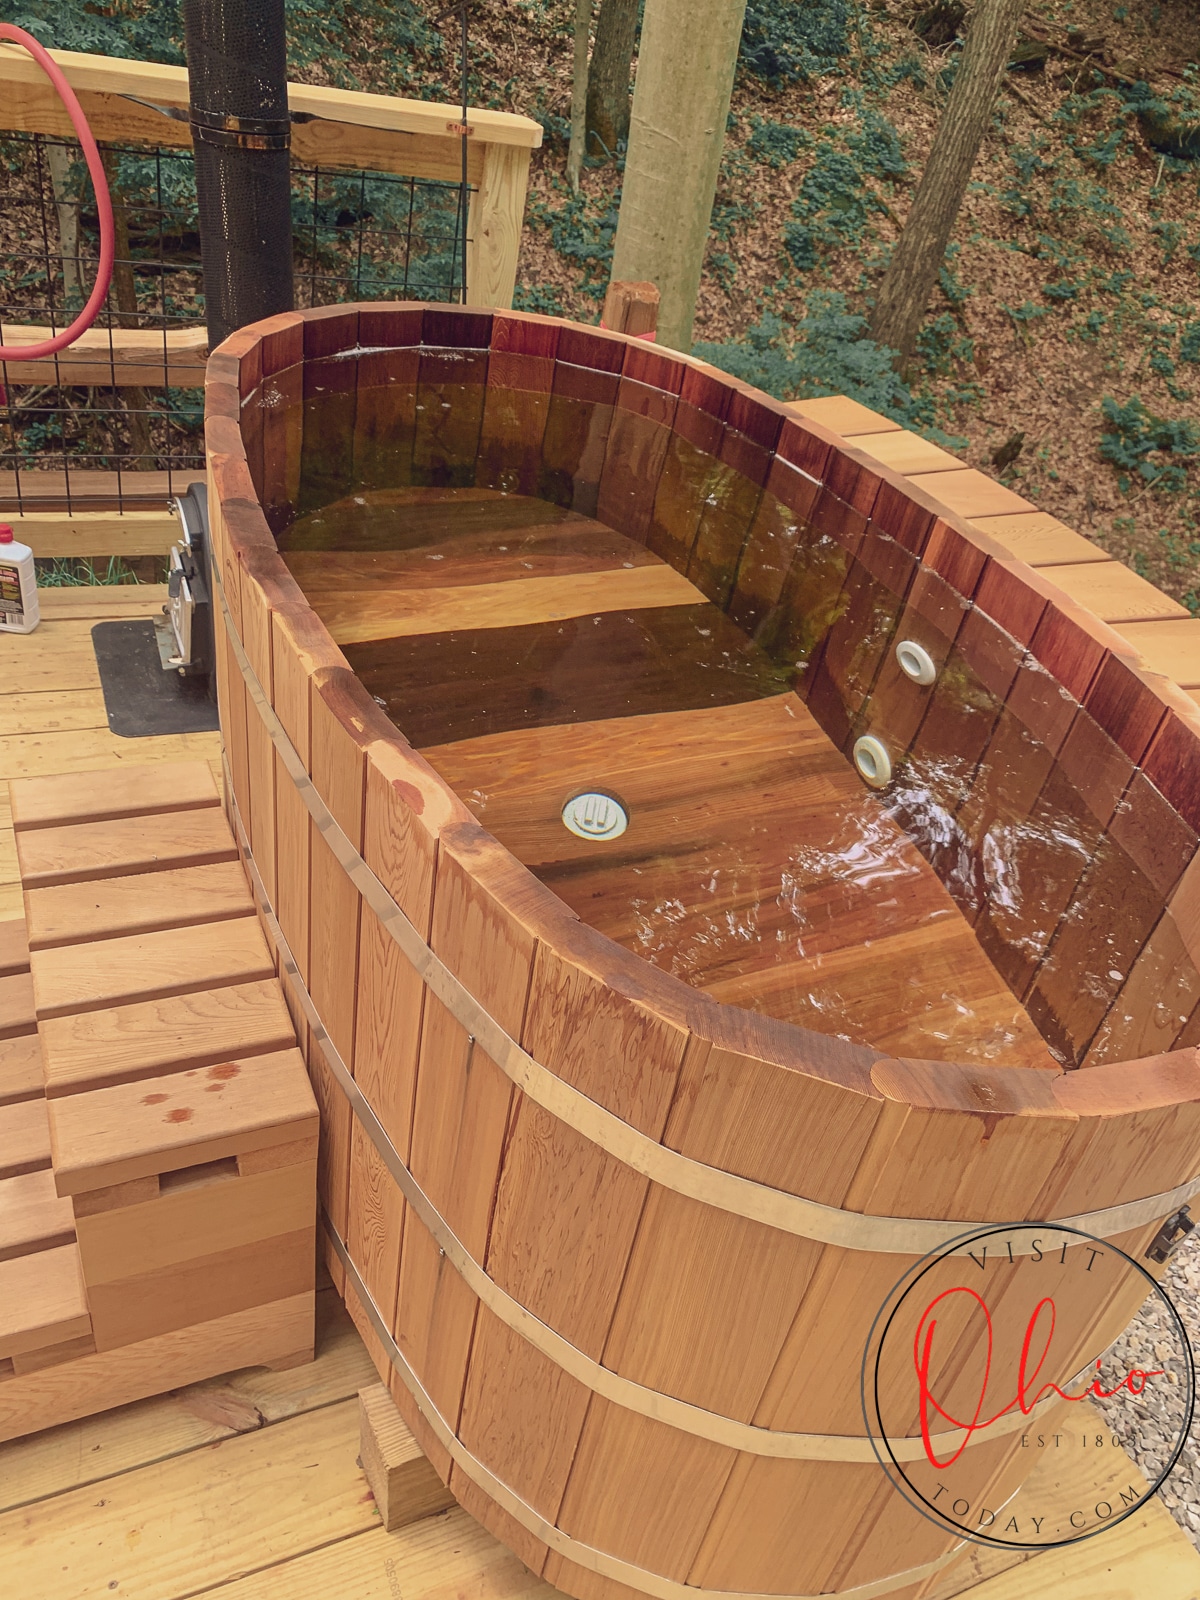 cedar oval tub full of water sitting on wodden deck